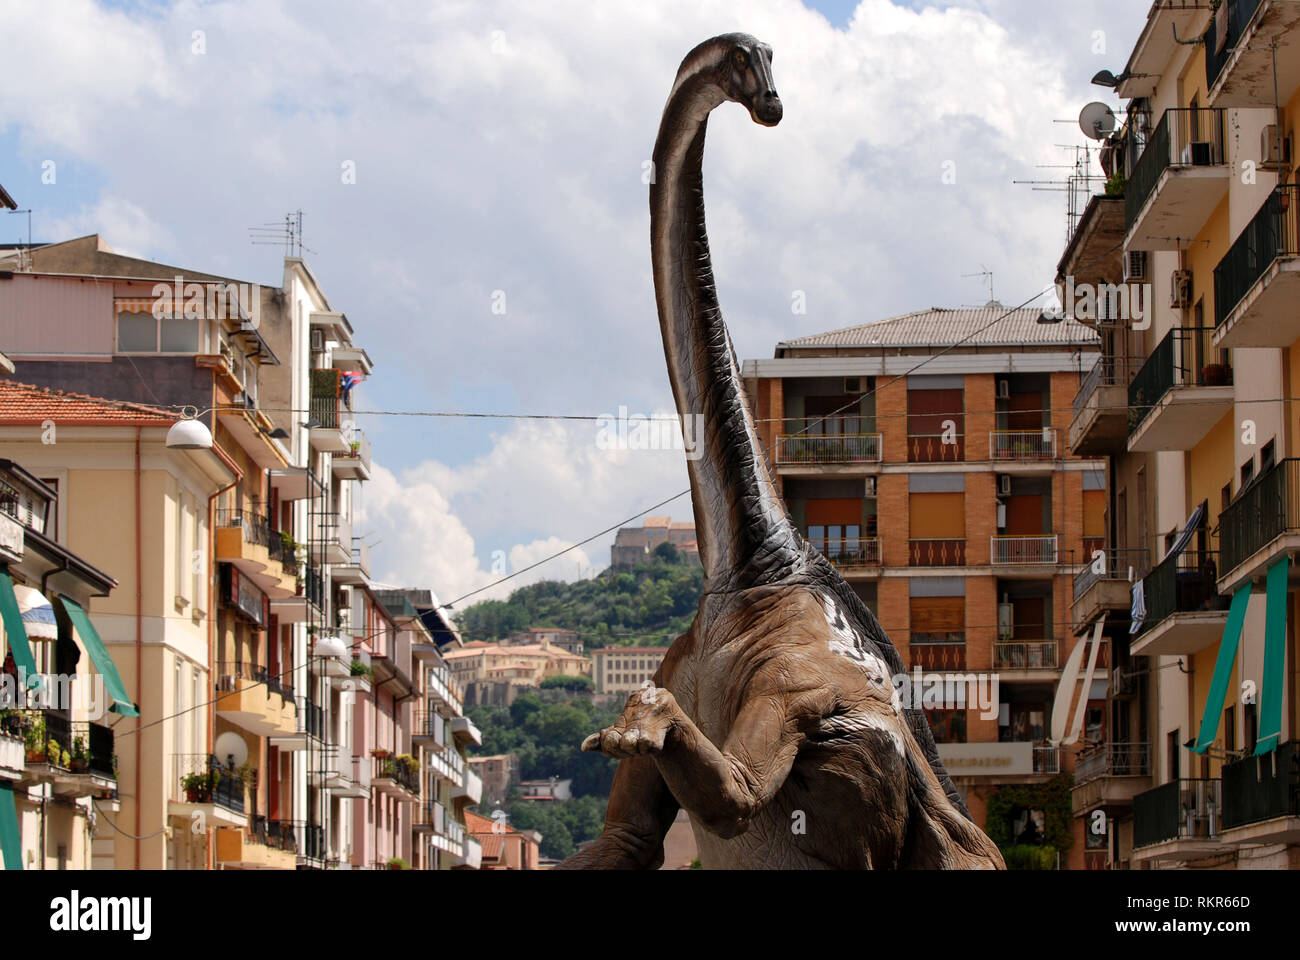 Les dinosaures marcher autour de la ville de reproduction à l'échelle 1:1 diplodocus longus dinosaures exposés dans la ville de Cosenza Calabria Italie 2018 Banque D'Images